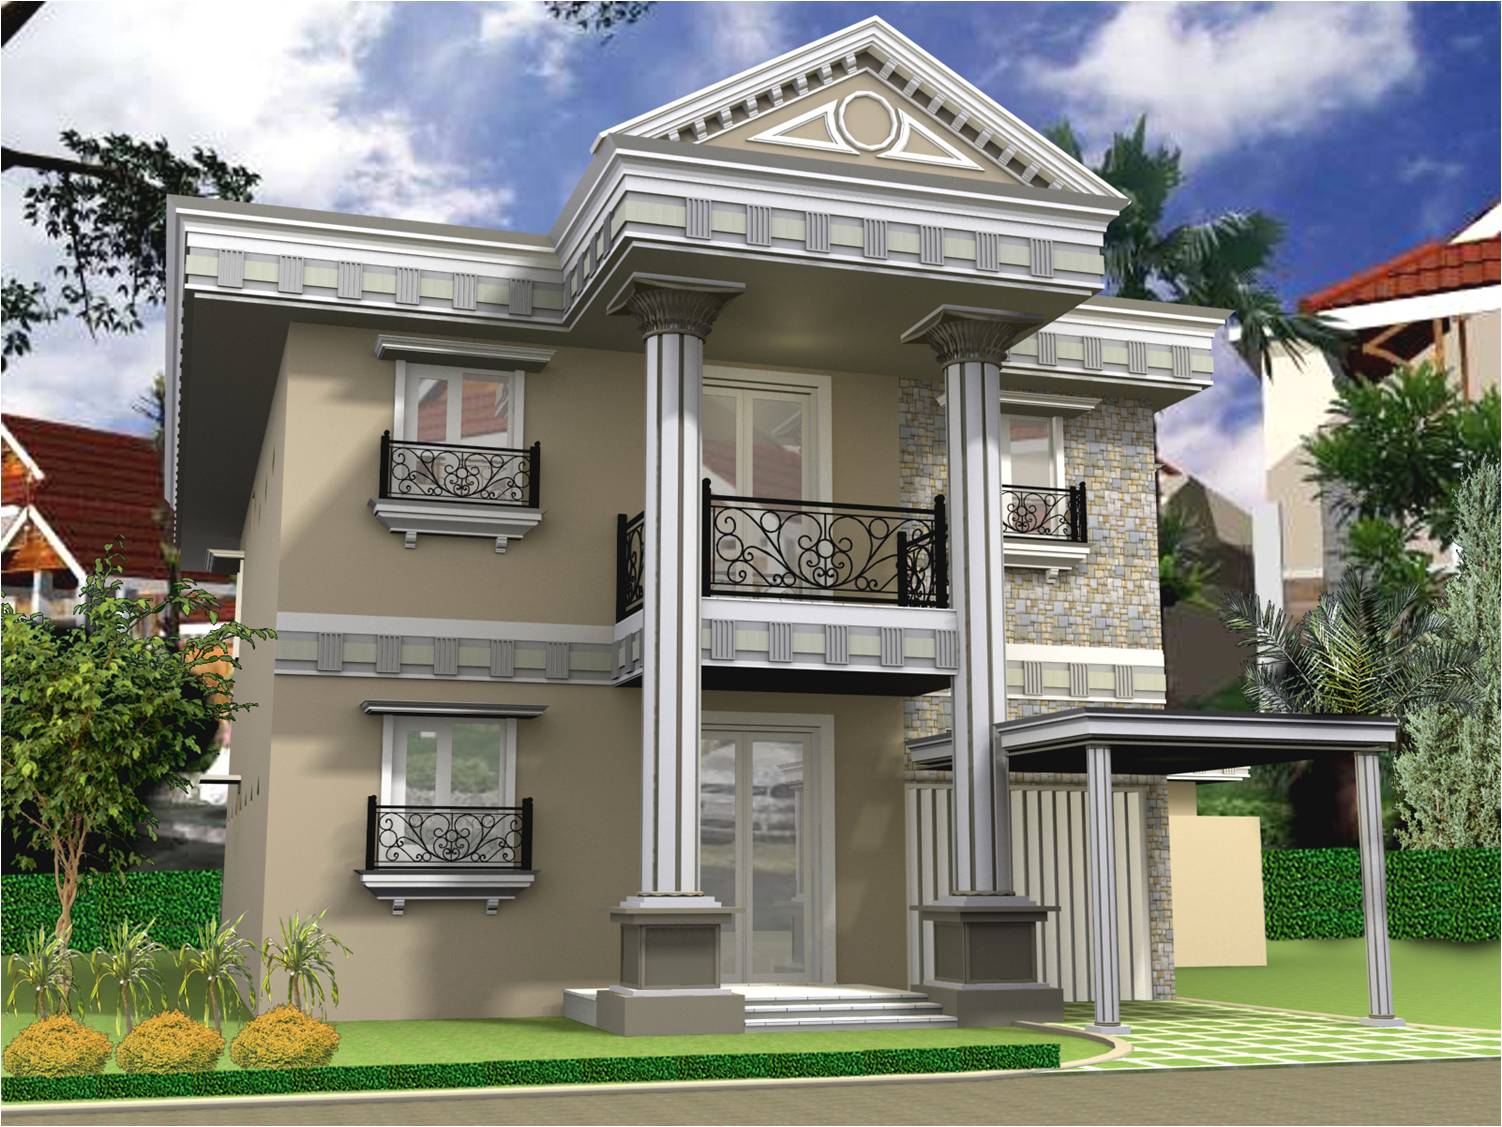 Gambar Rumah Minimalis 2 Lantai Sederhana Terbaru | Desain Rumah ...